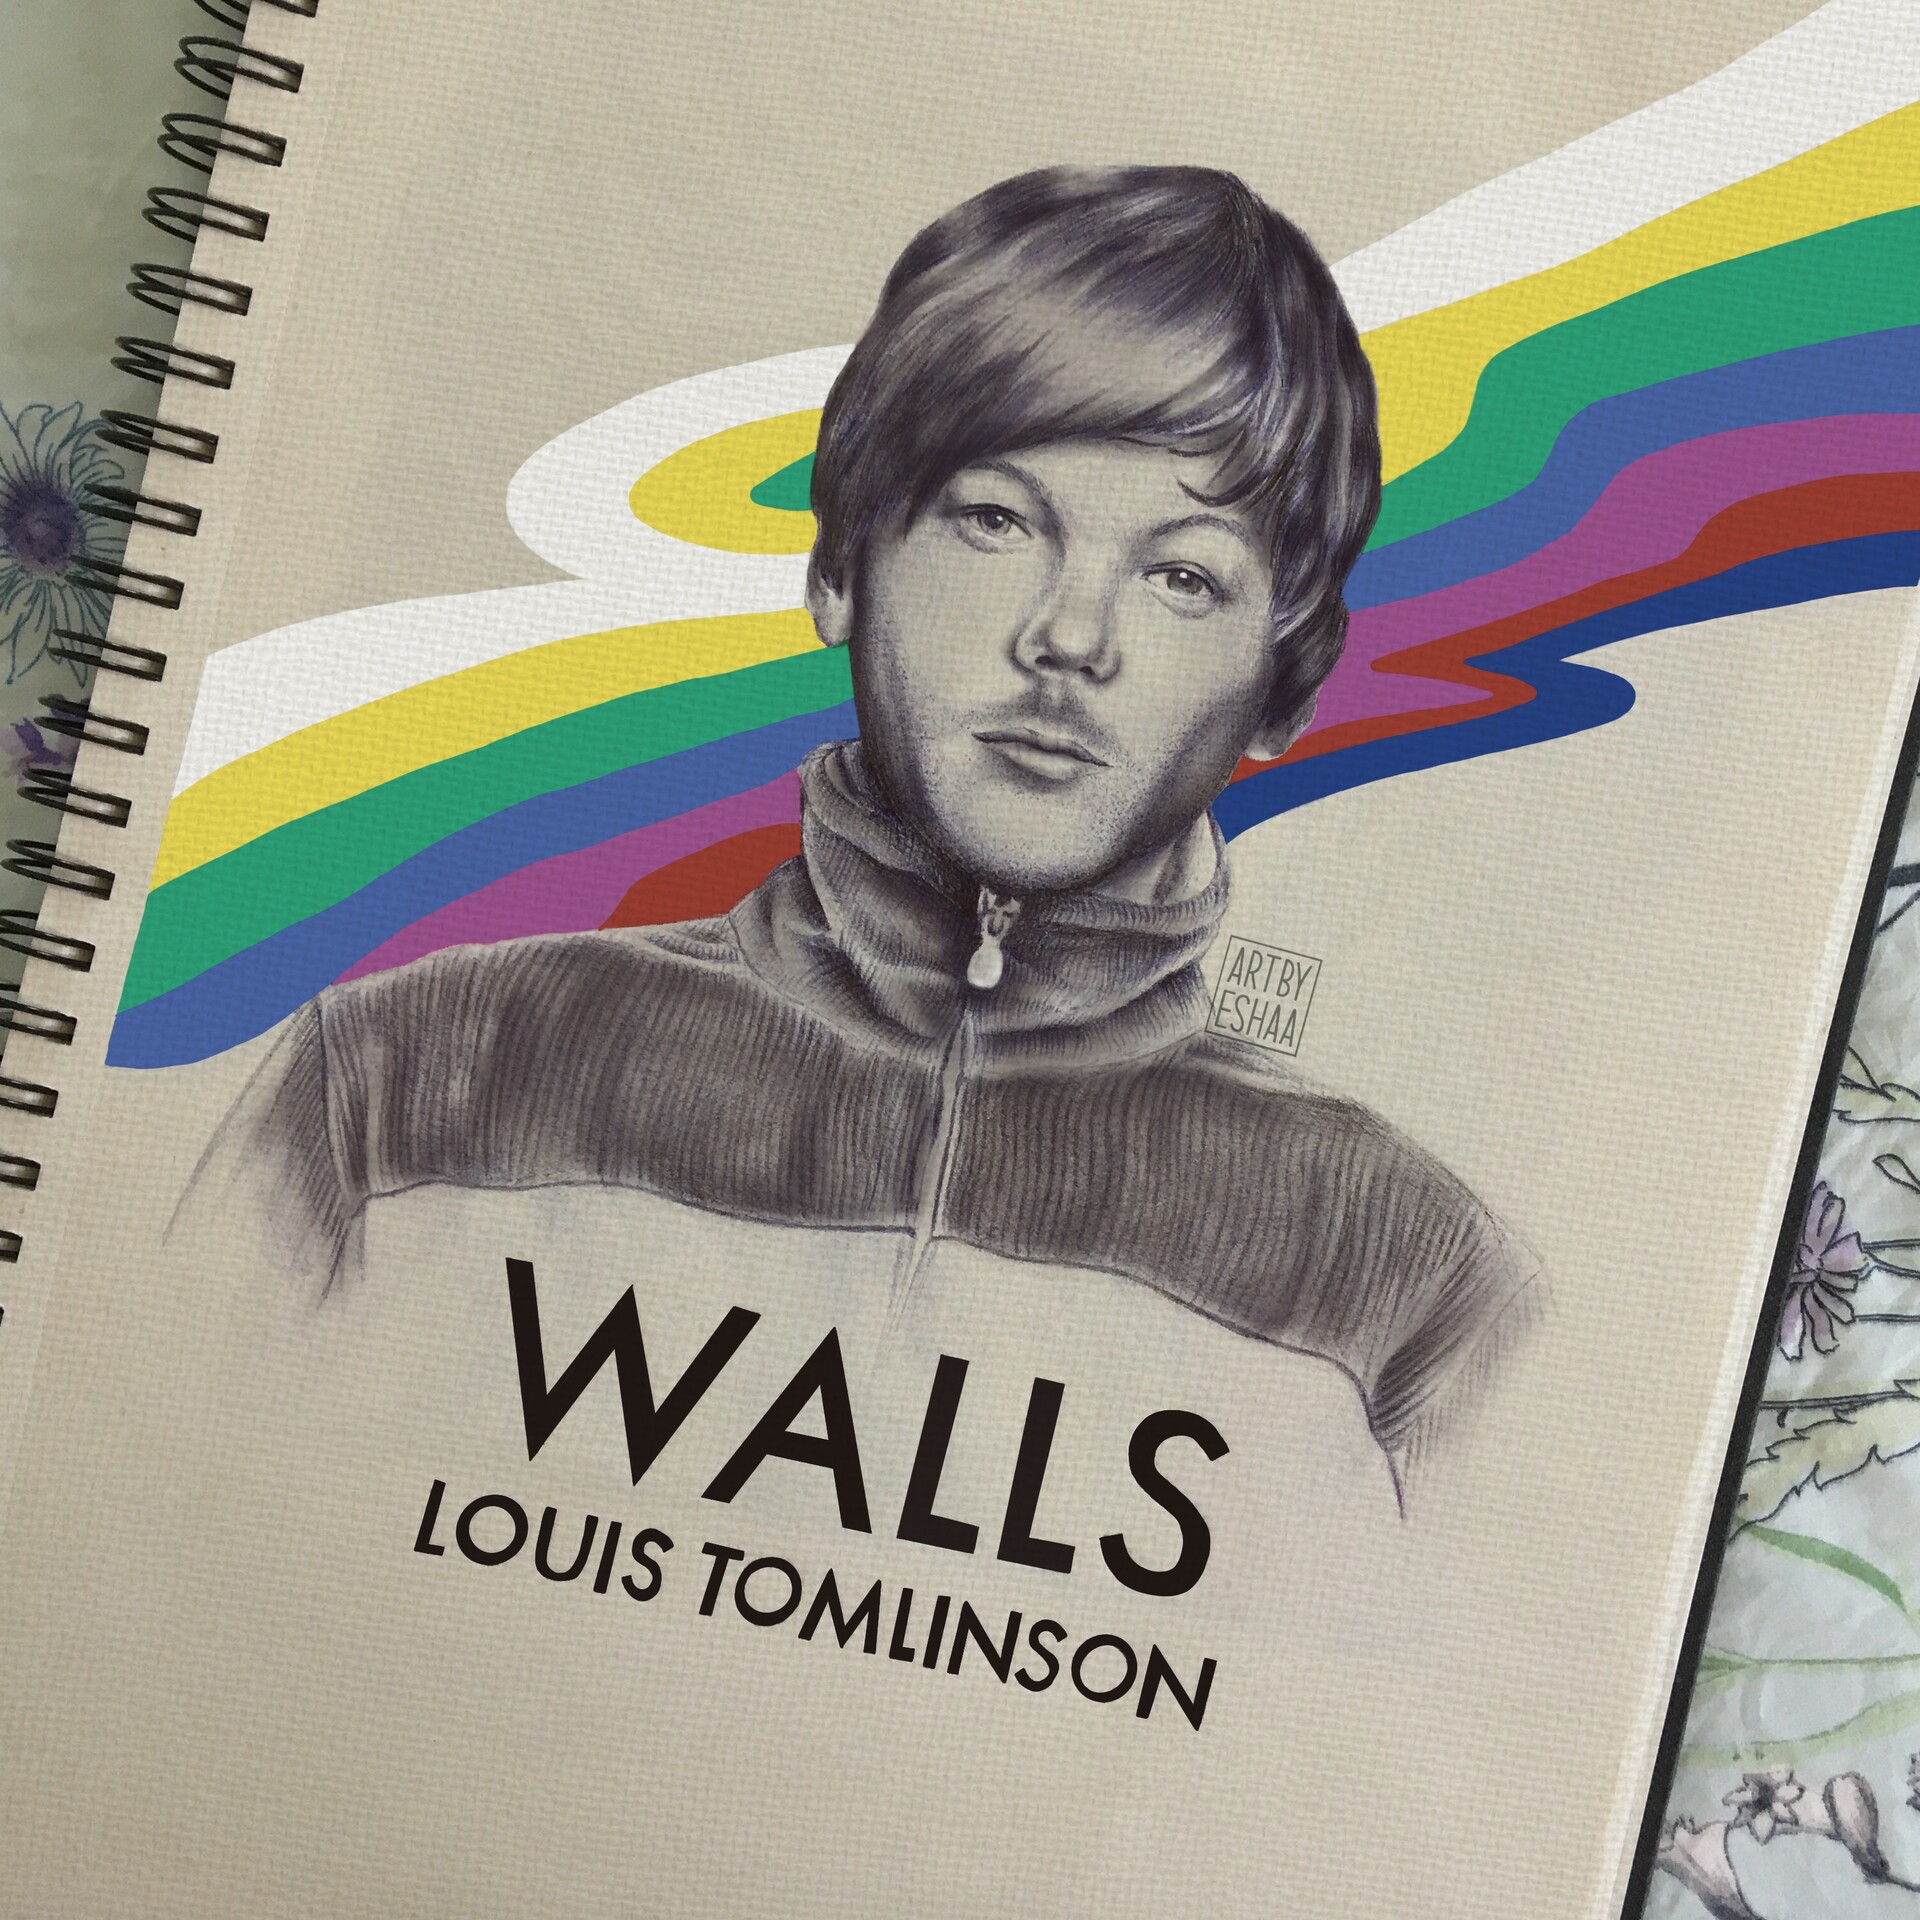 Walls - Louis Tomlinson